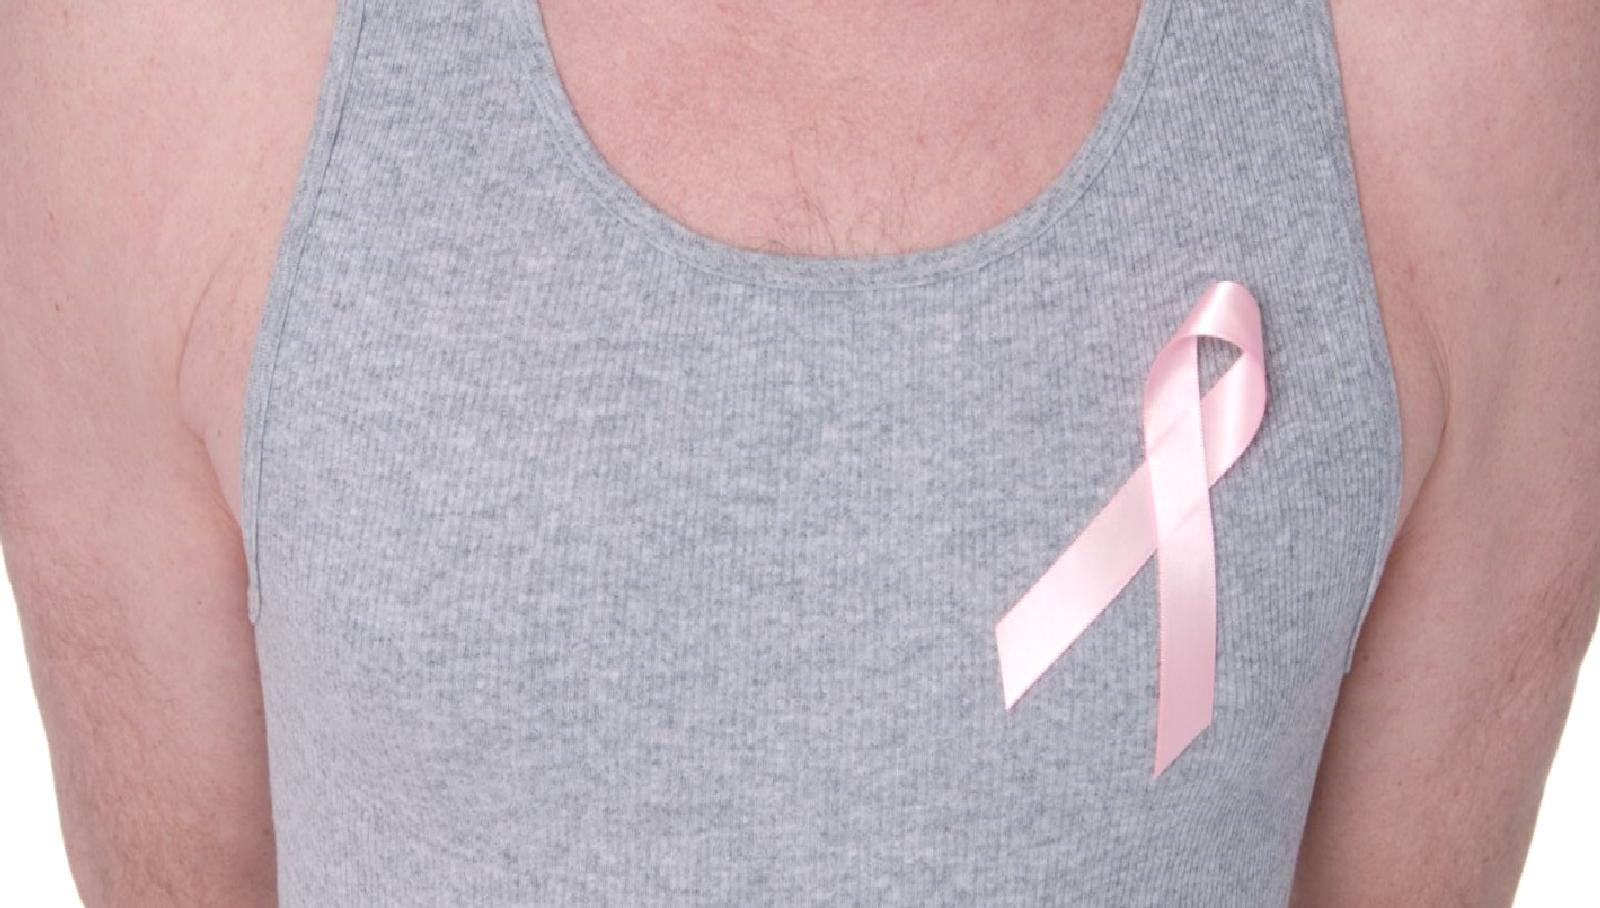 Türkiye’de 500 erkeğe göğüs kanseri tanısı konuldu